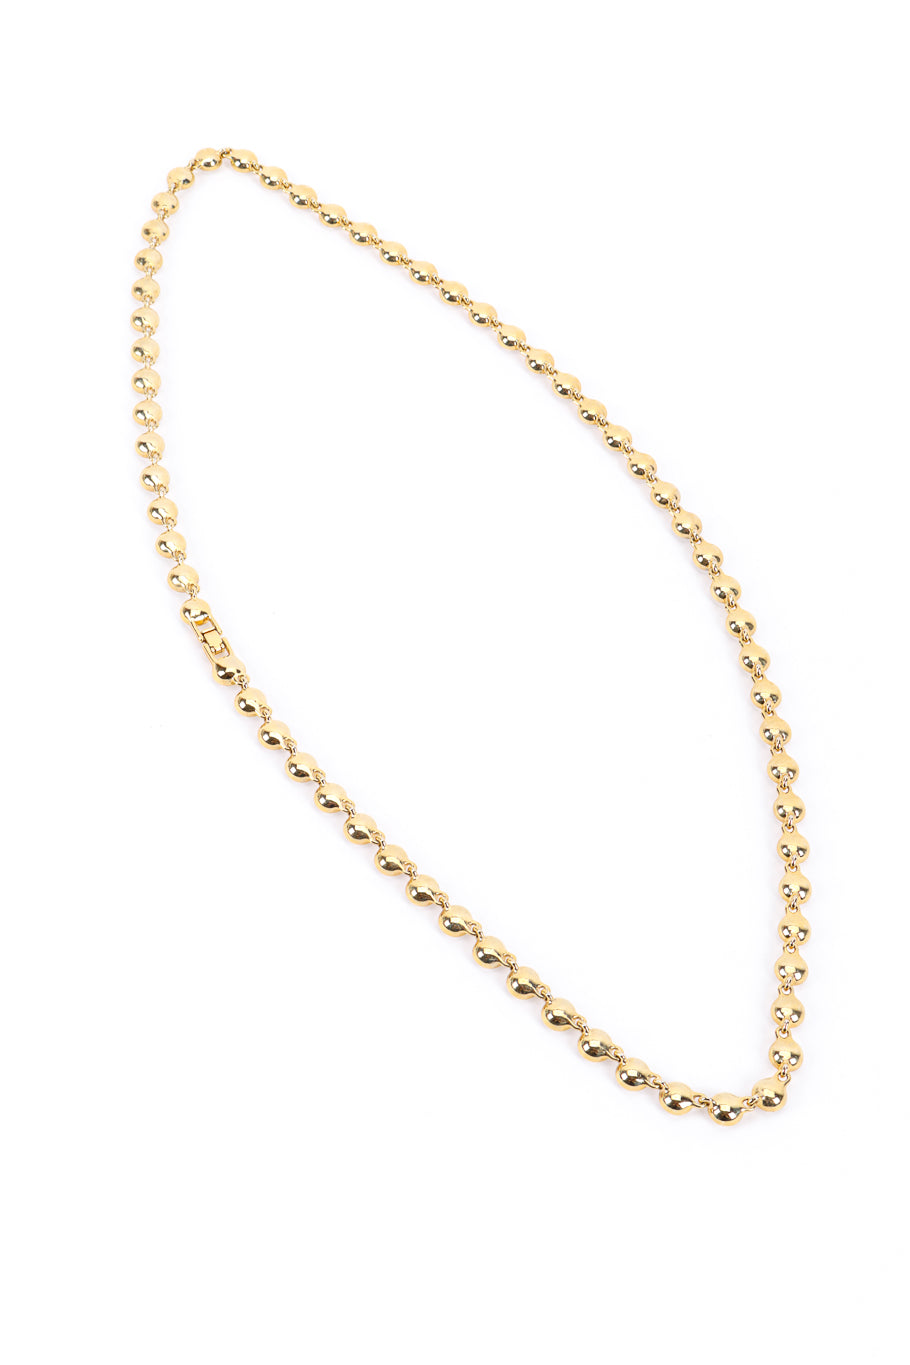 Vintage Givenchy Crystal Link Necklace back @recessla